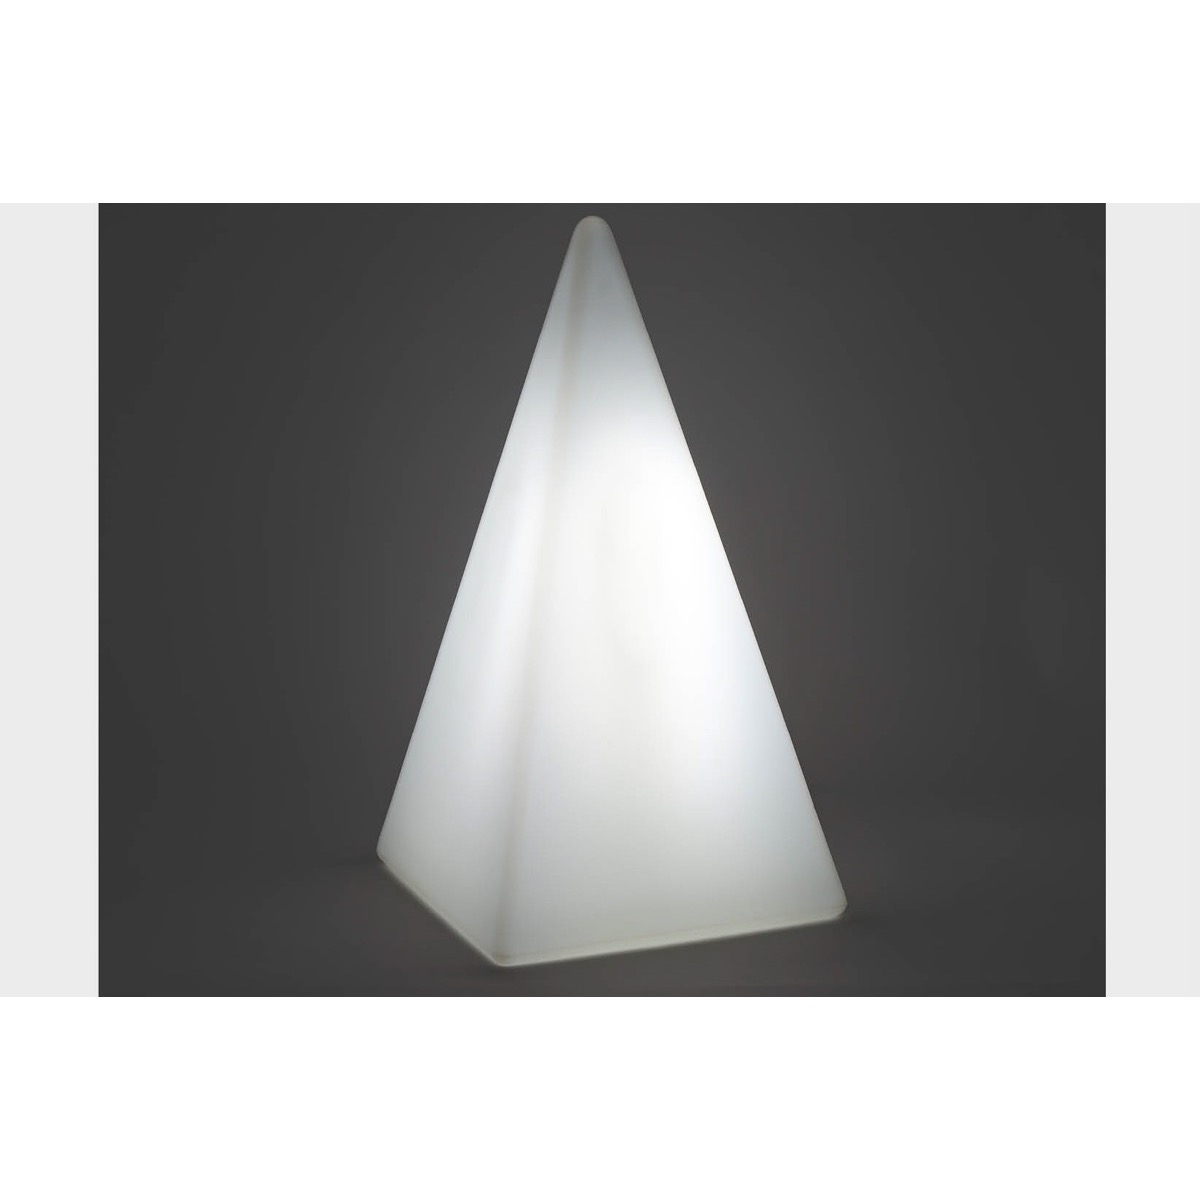 70405 Standleuchte Pyramide 36 cm der Firma EPSTEIN Design Leuchten